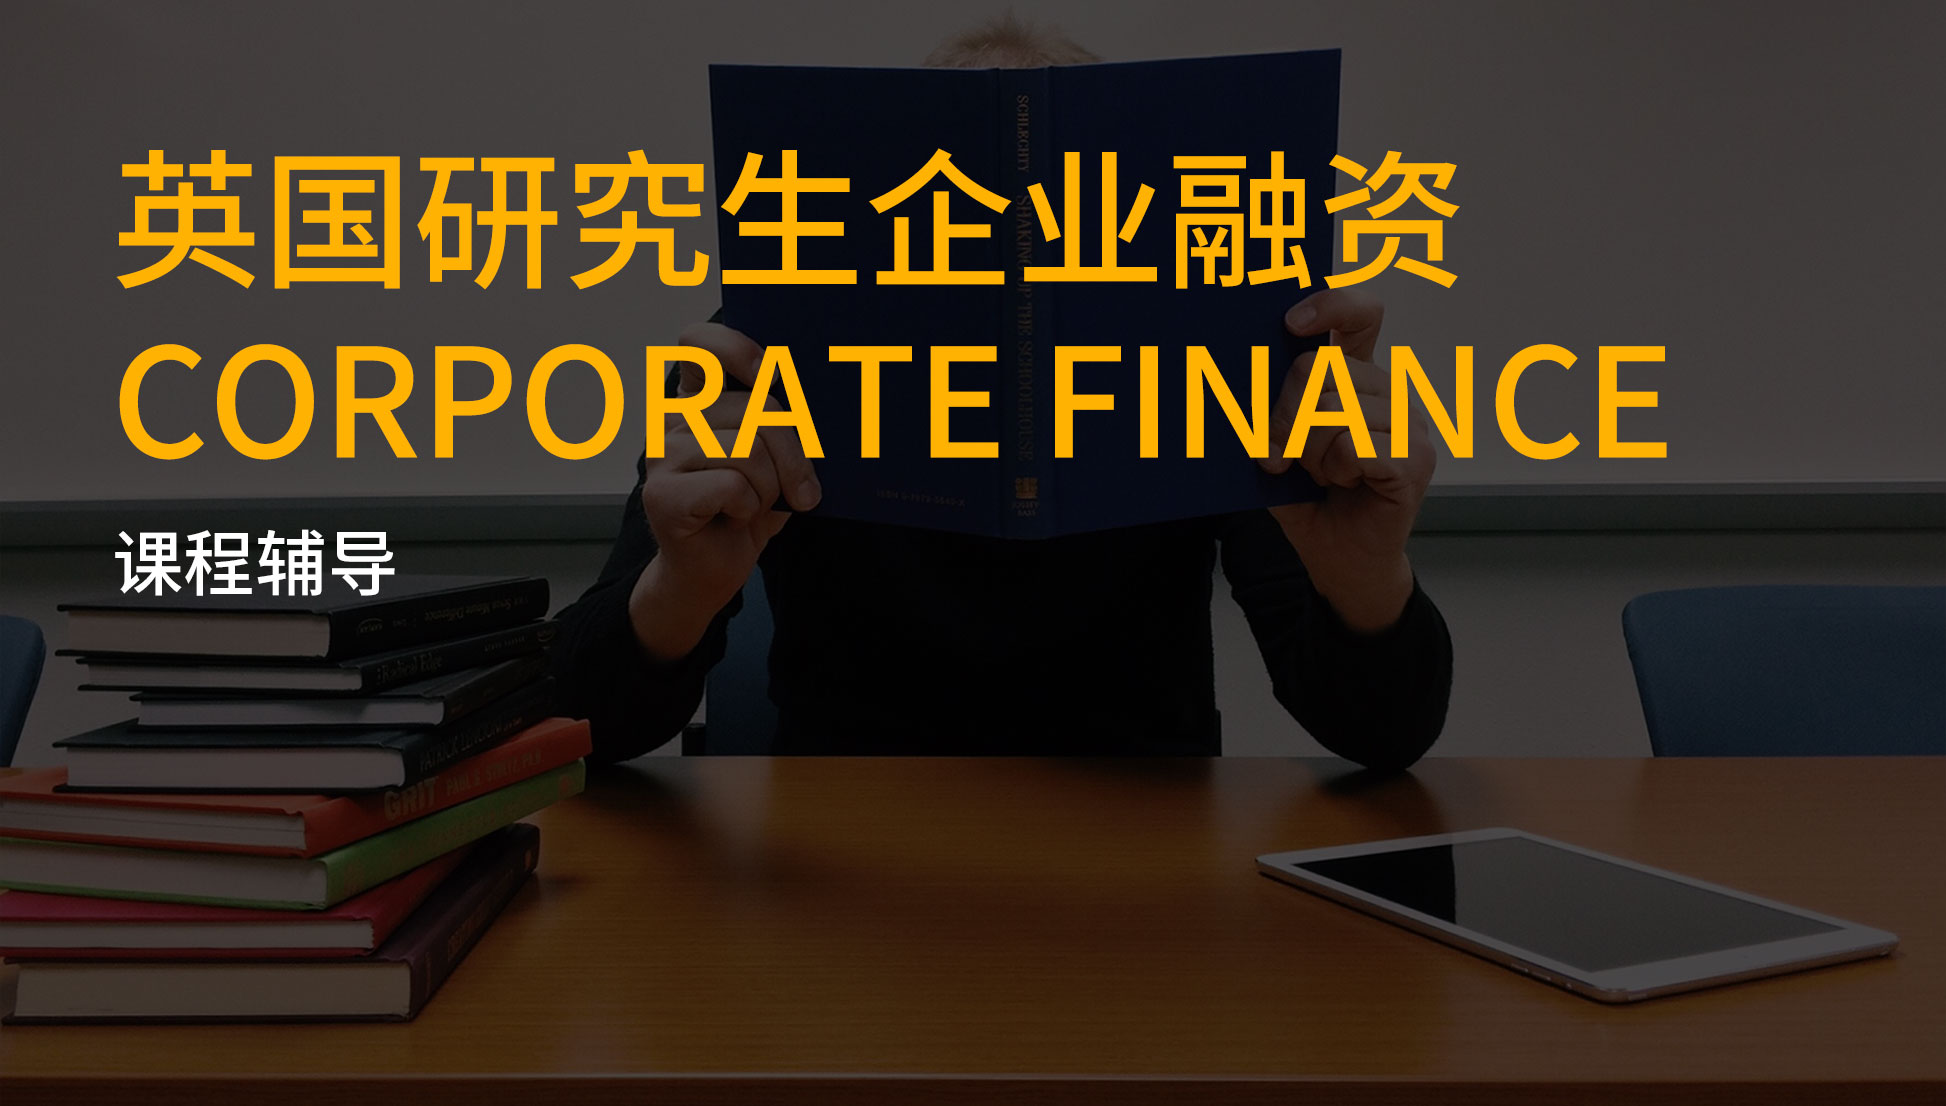 英国研究生企业融资corporate finance课程补习